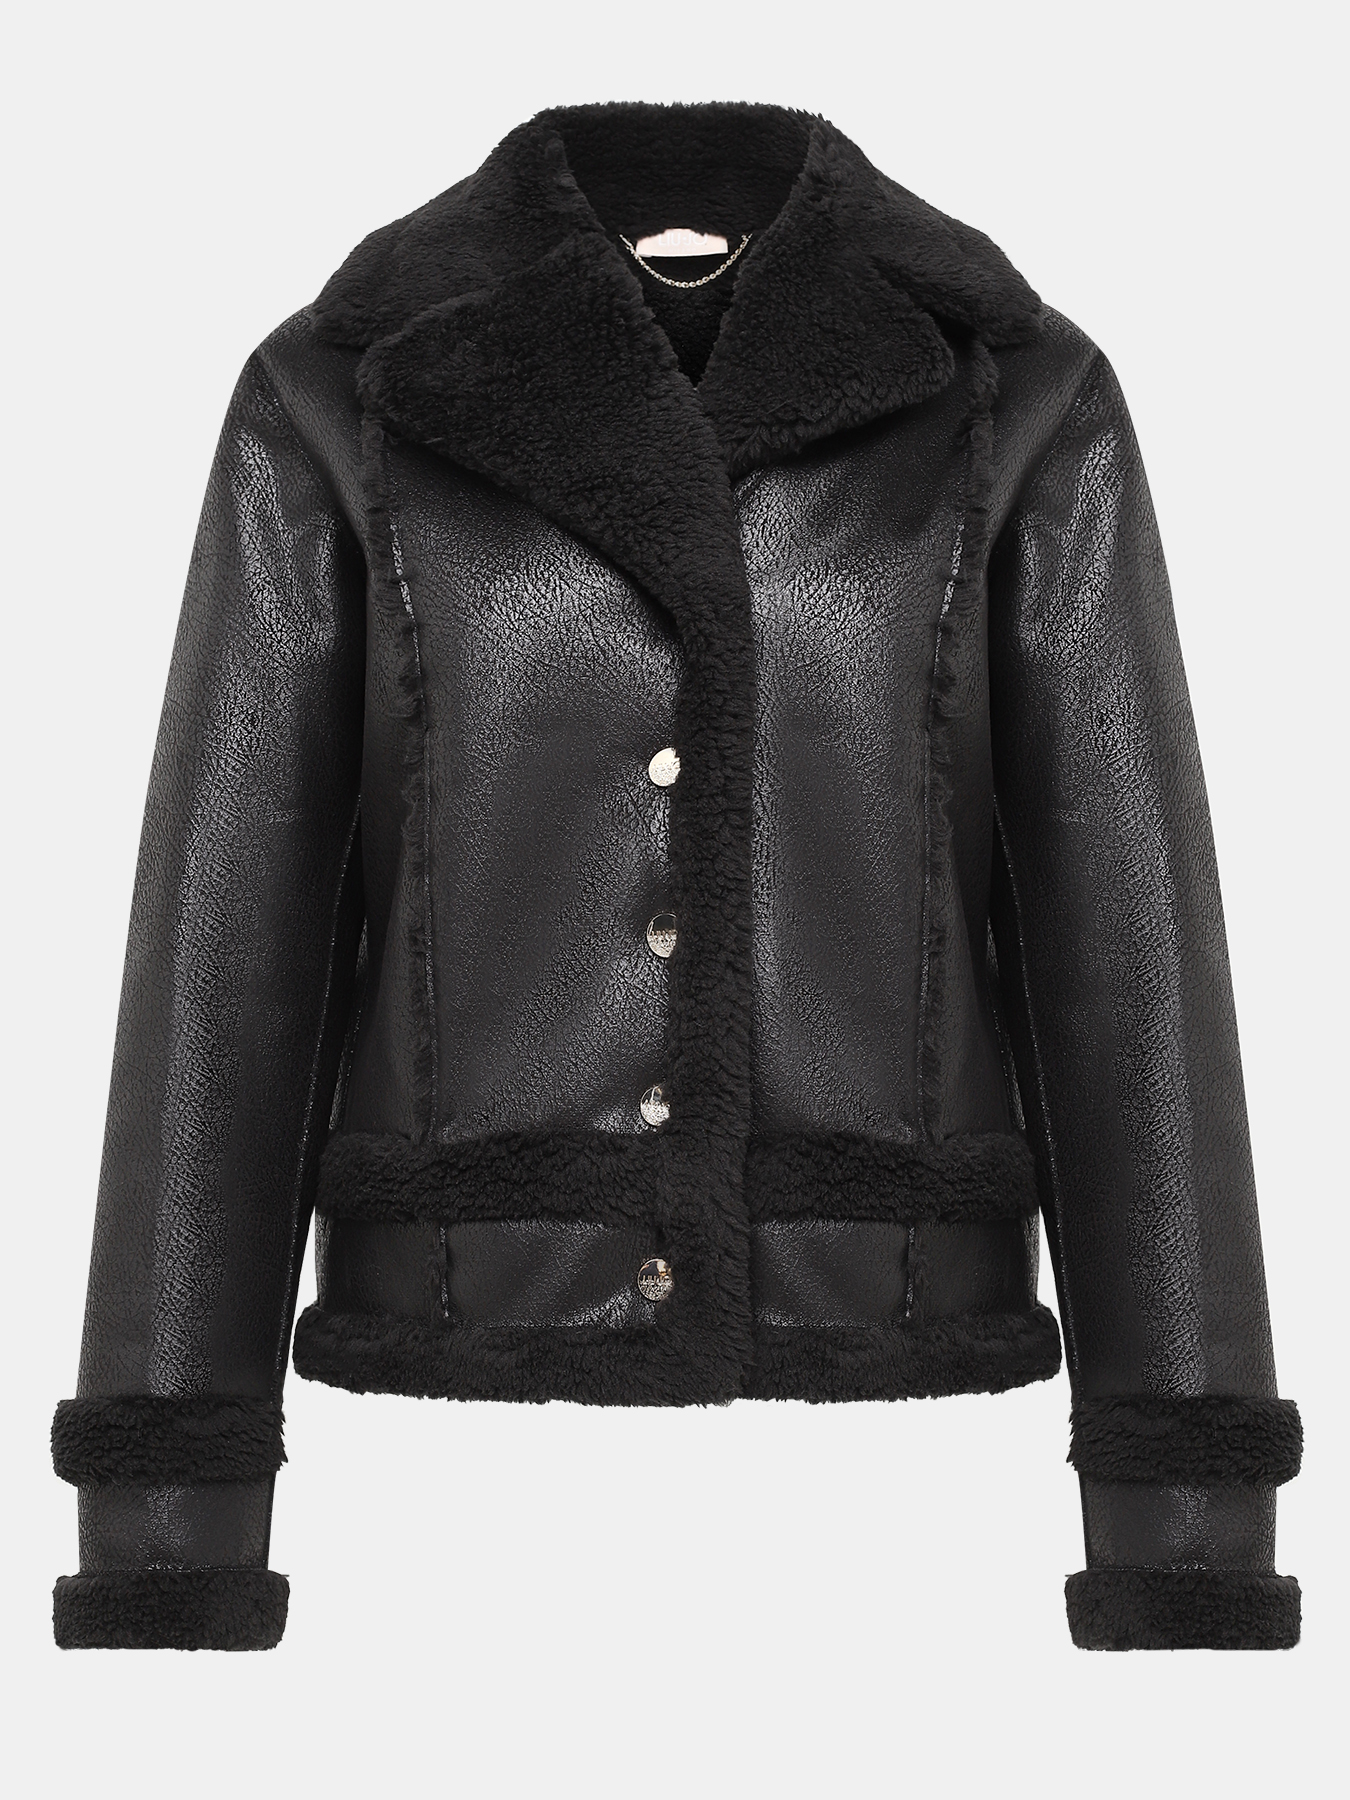 Утепленная куртка Liu Jo Sport 414786-044, цвет черный, размер 46-48